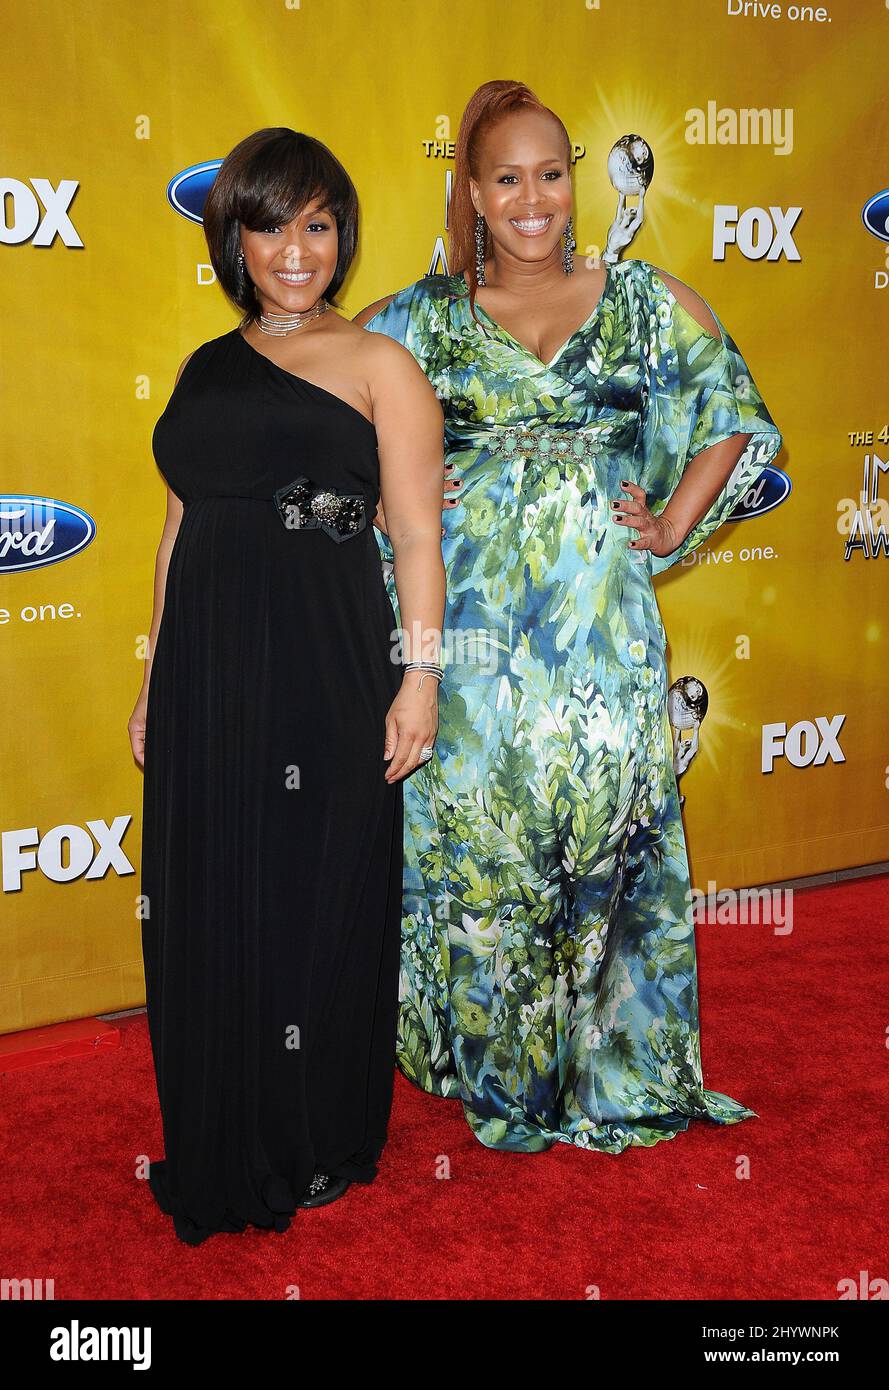 Erica Campbell e Tina Campbell arrivano per i 41st NAACP Image Awards che si tengono presso il Shrine Auditorium di Los Angeles, California, USA. Foto Stock